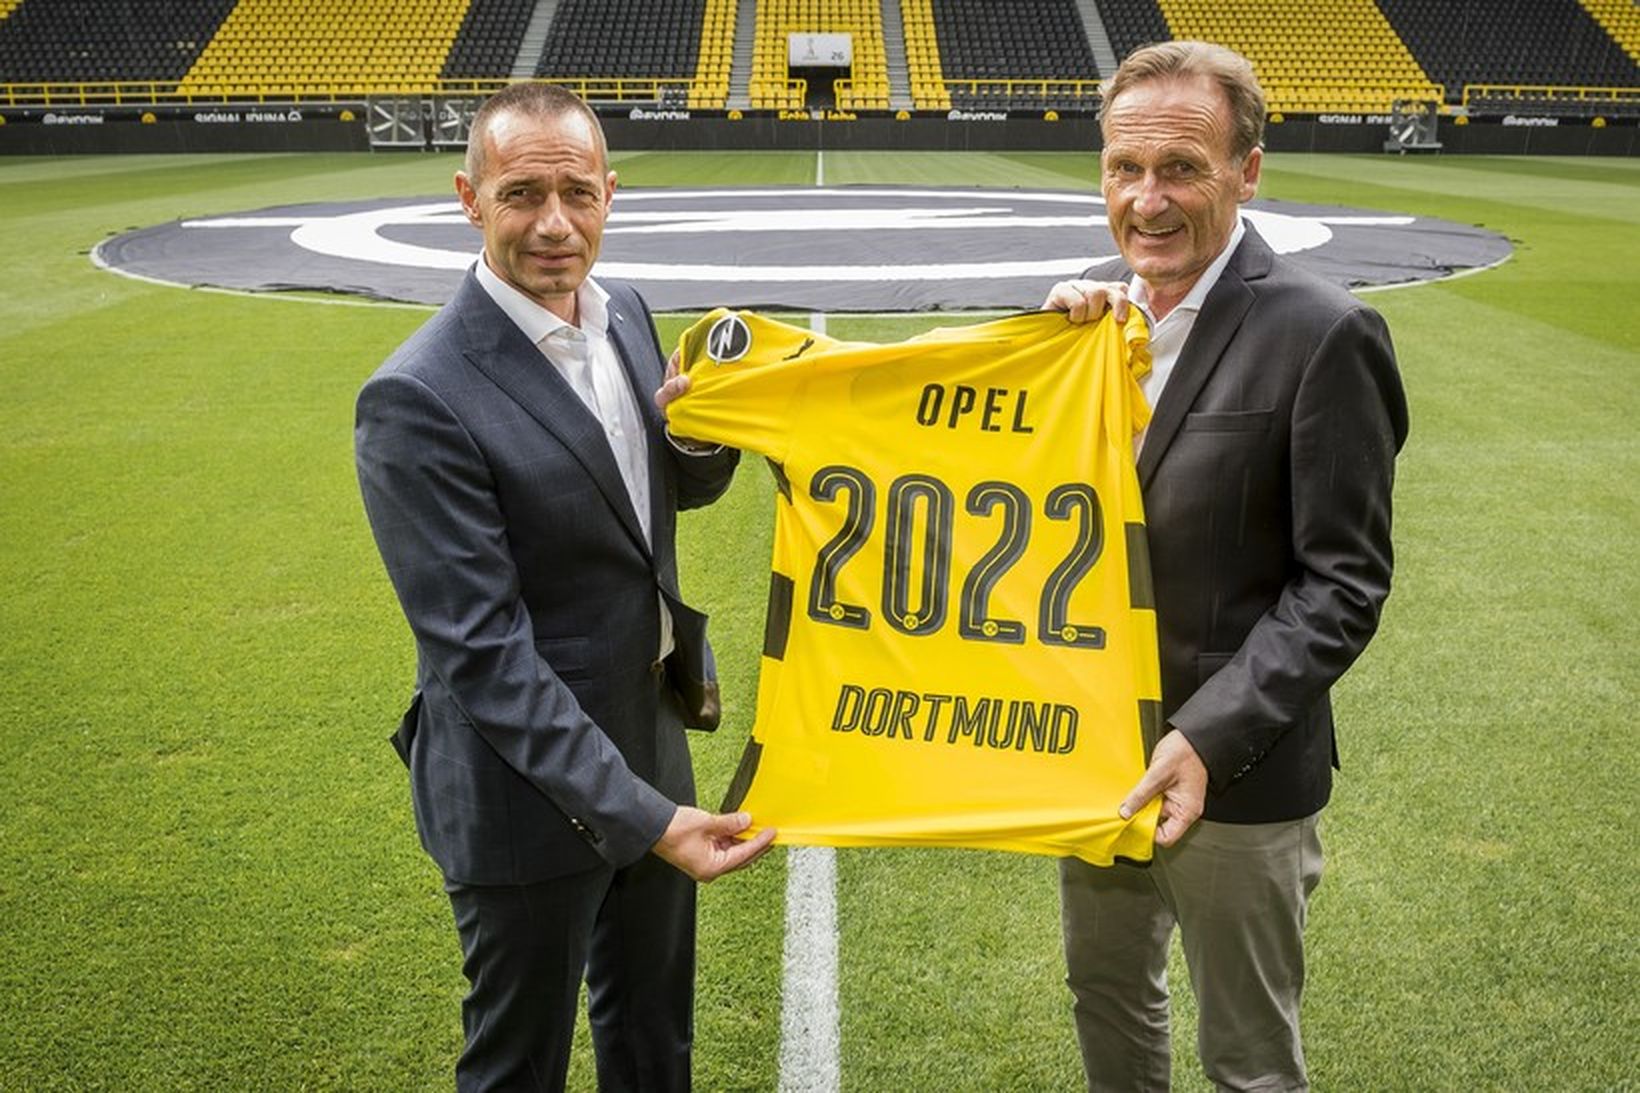 Samstarf Opel og Borussia Dortmund hefur verið framlengt út 2022.